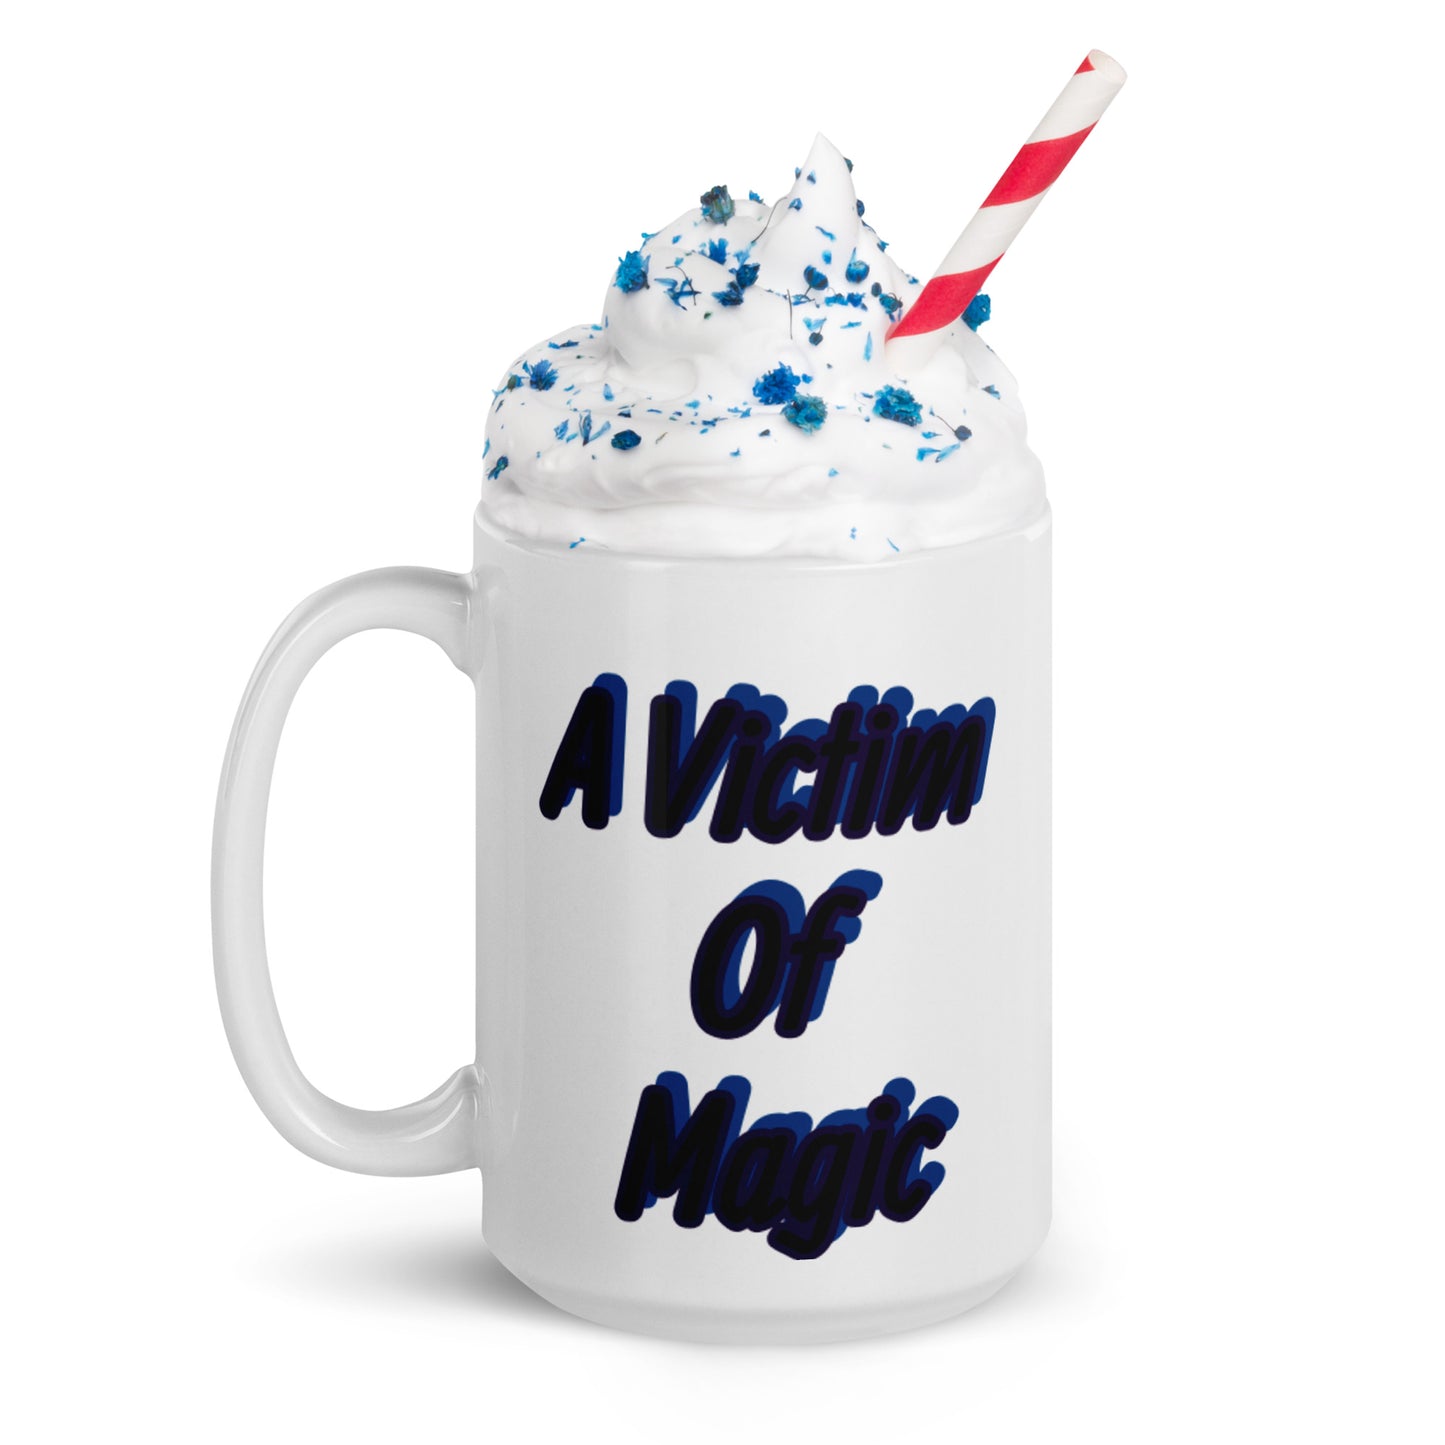 Magic and Mischief White glossy mug